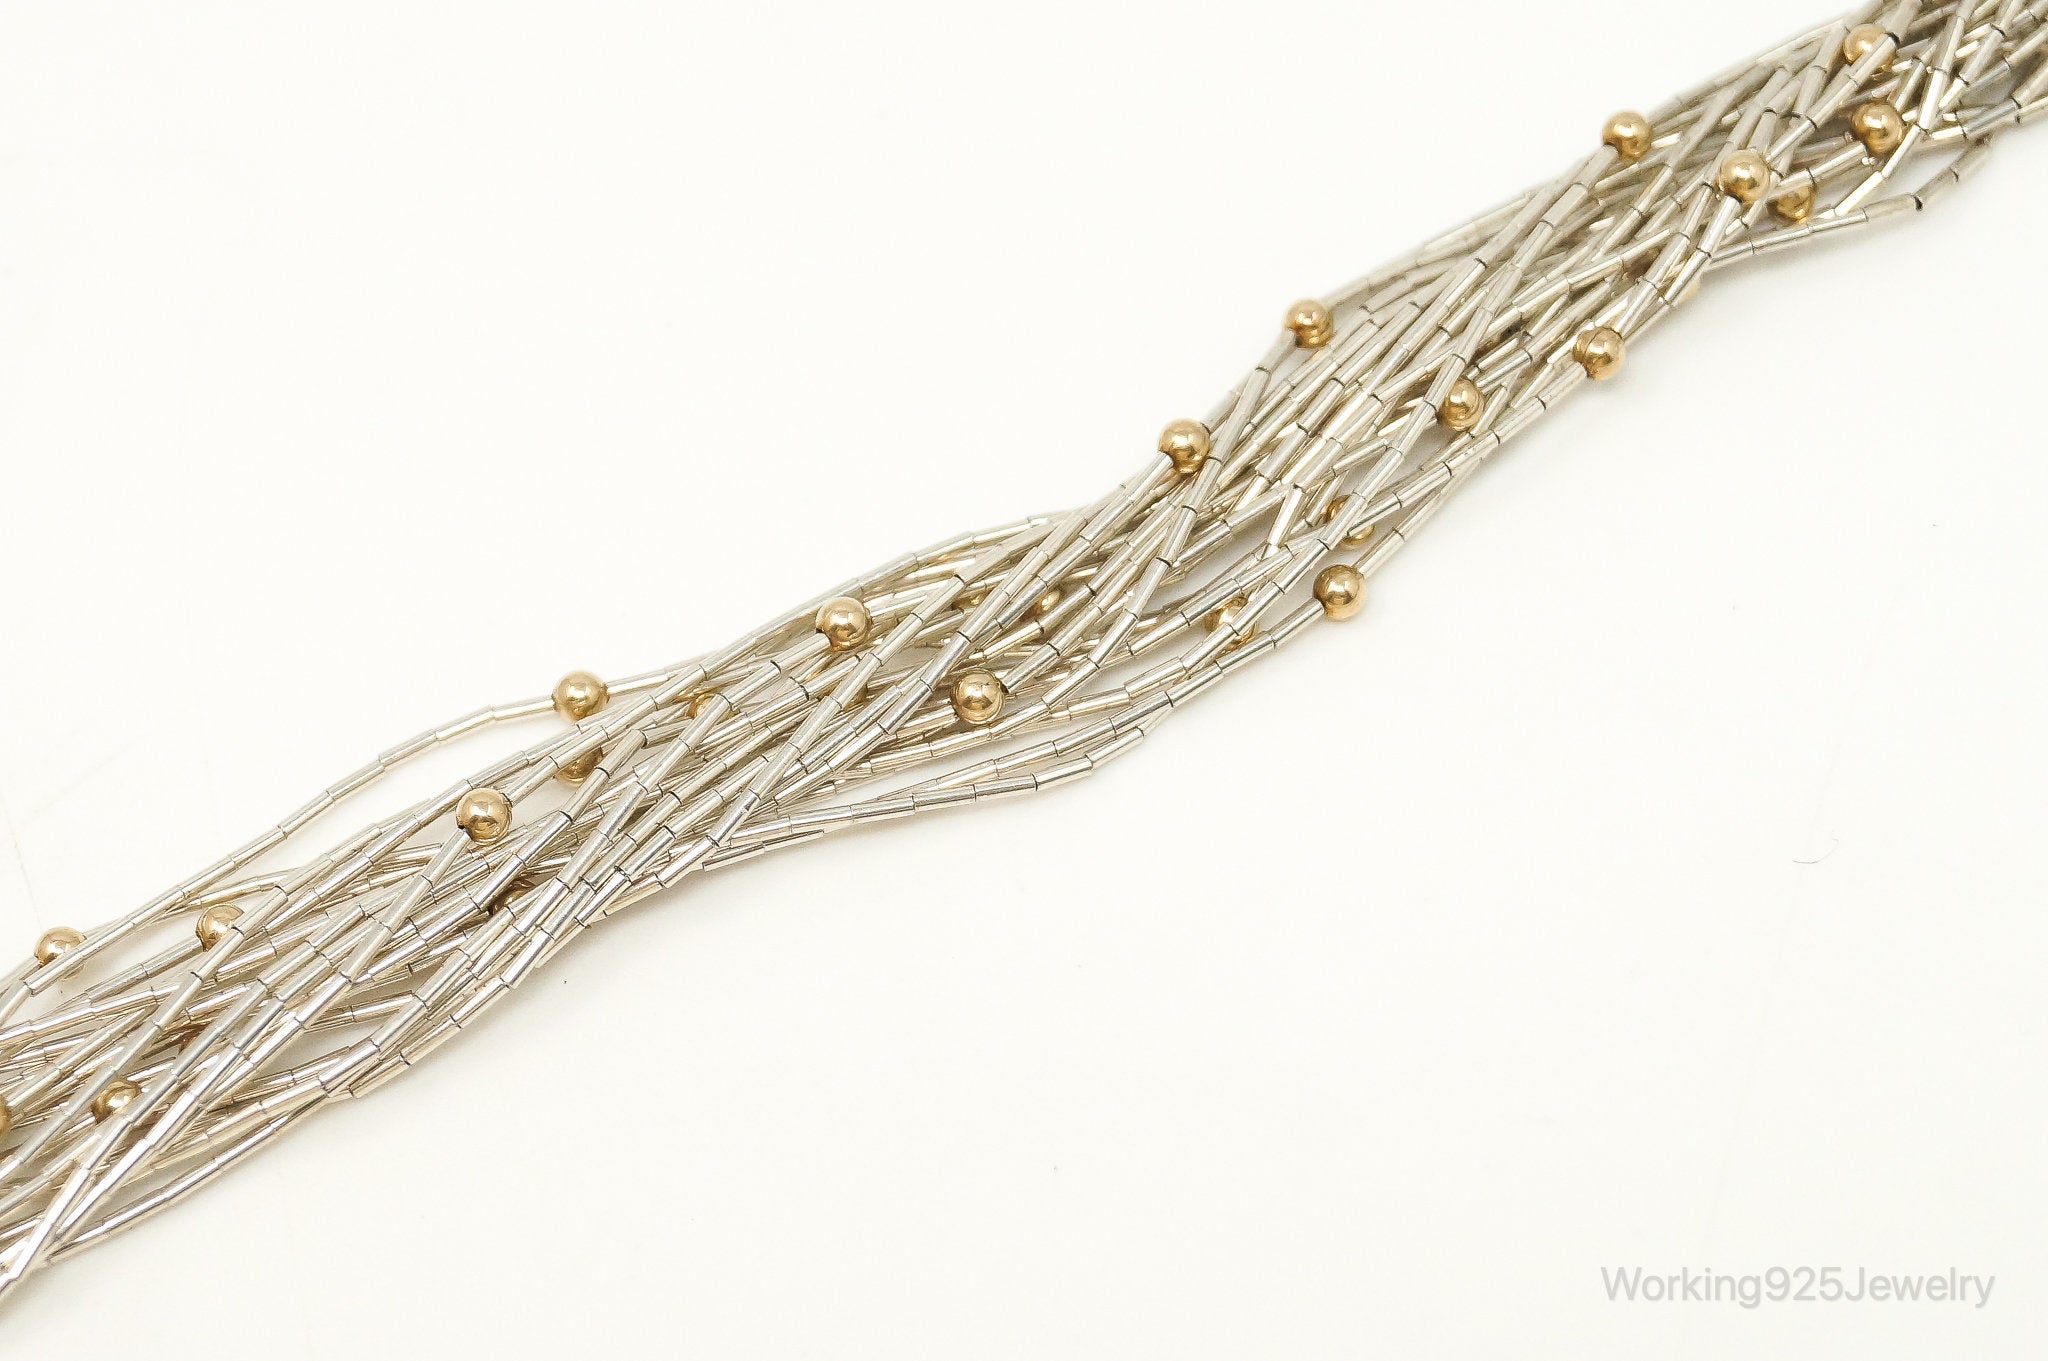 Designer Carolyn Pollack Gold Over Sterling Beads Sterling Silver Bracelet